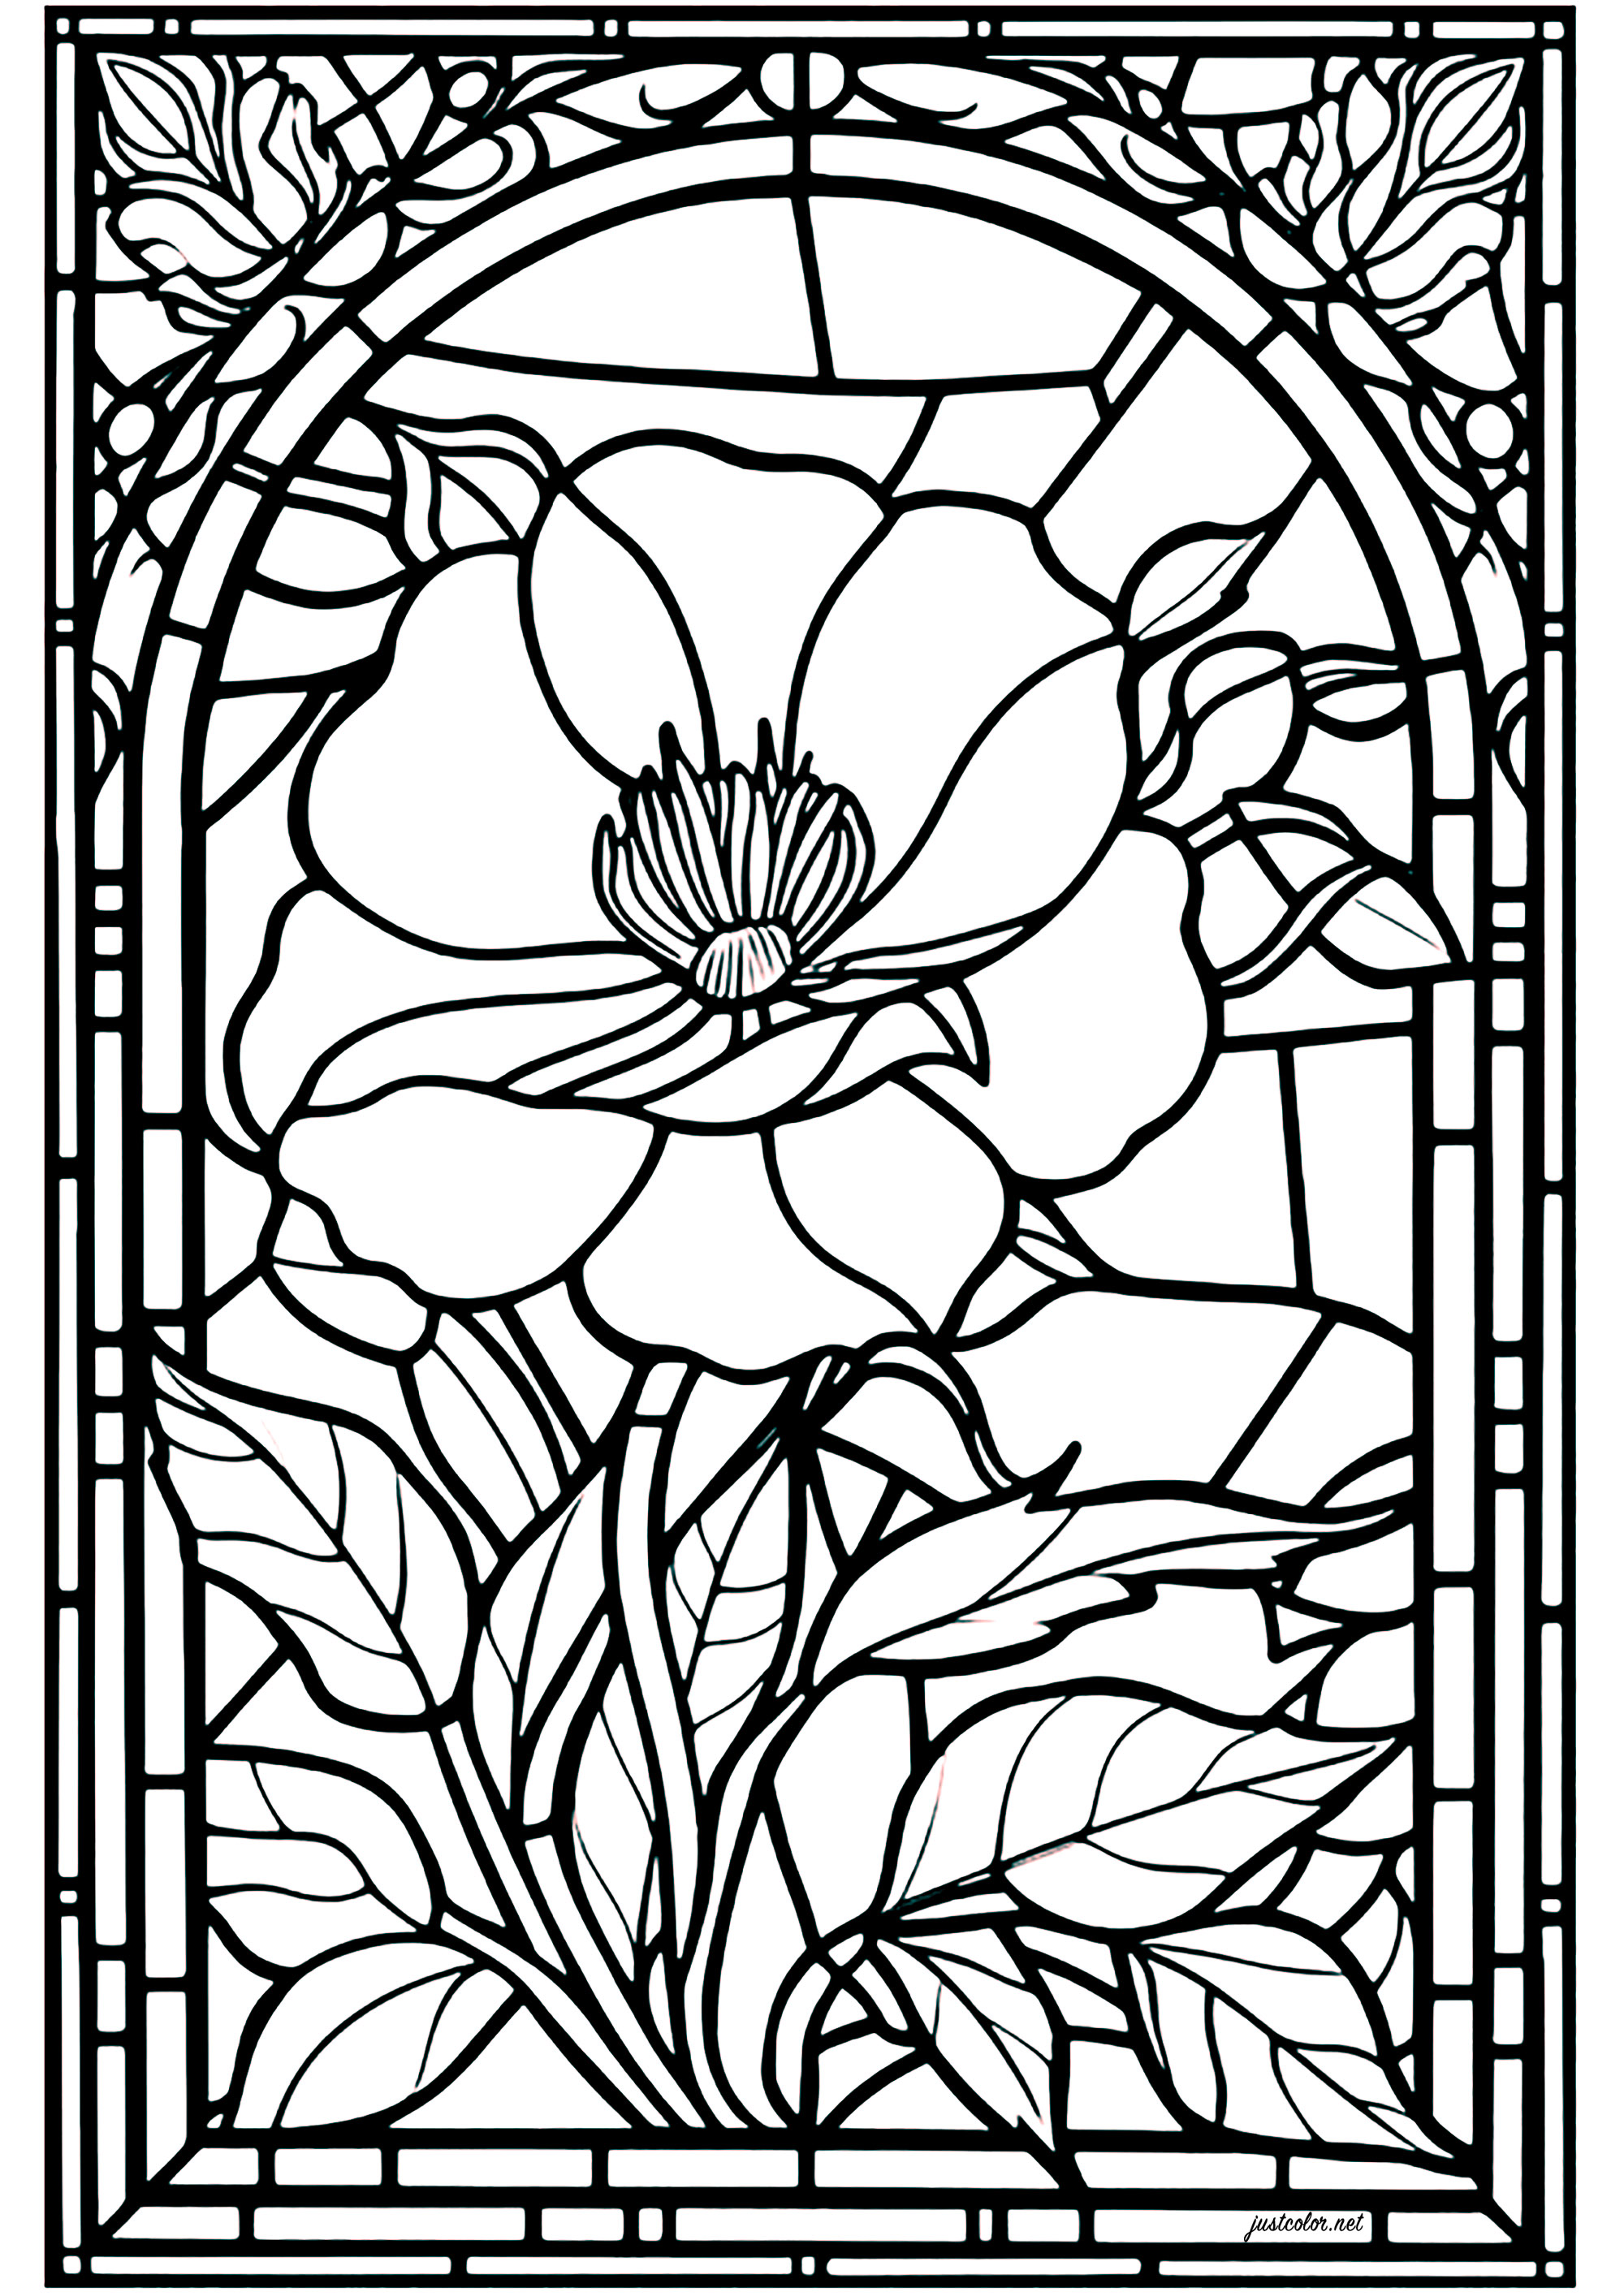 Colorir um vitral com uma bonita flor como tema principal